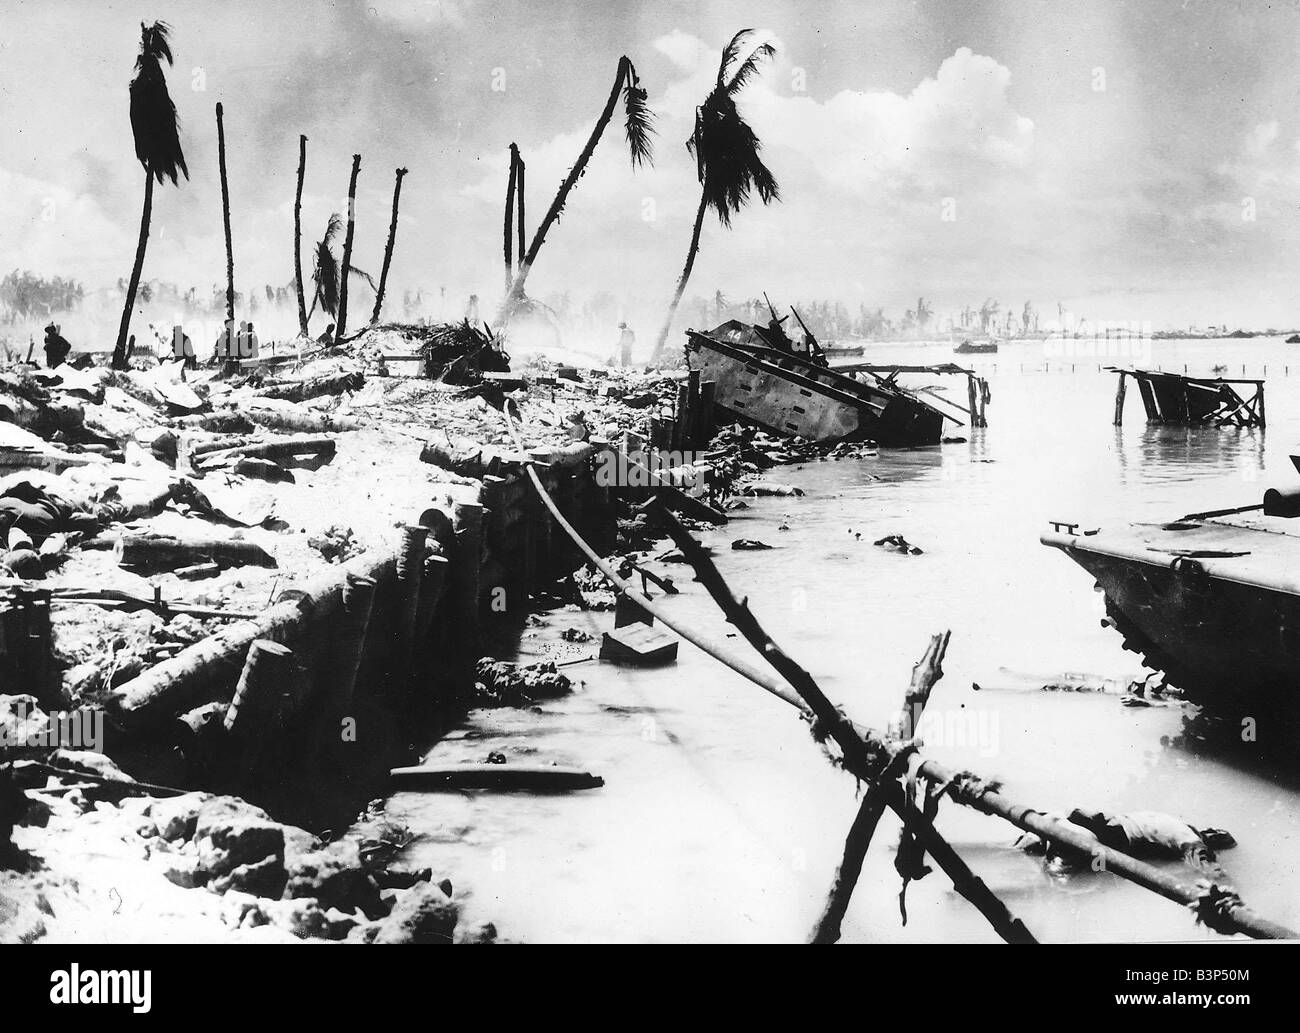 Battle Of Tarawa Stock Photos & Battle Of Tarawa Stock Images - Alamy1300 x 1033